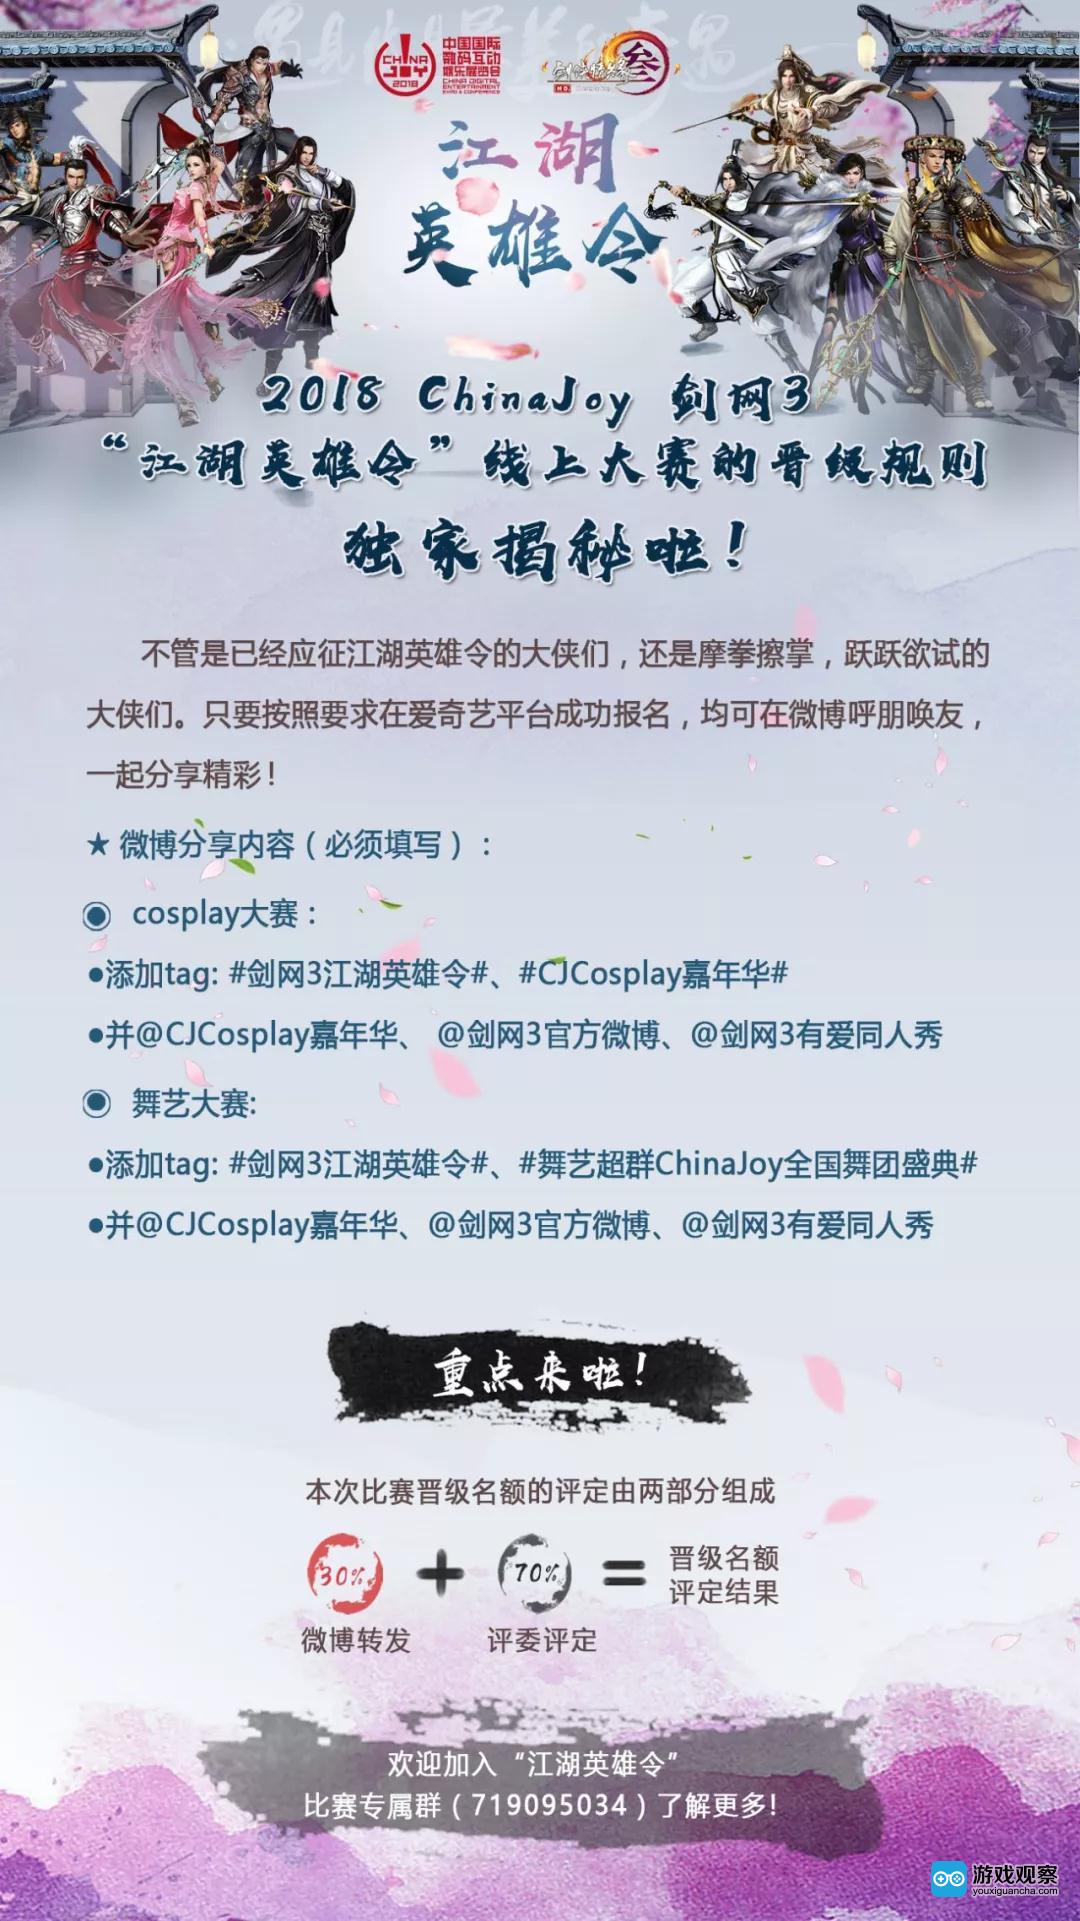 2018 ChinaJoy 剑网3“江湖英雄令”线上大赛的晋级规则独家揭秘啦